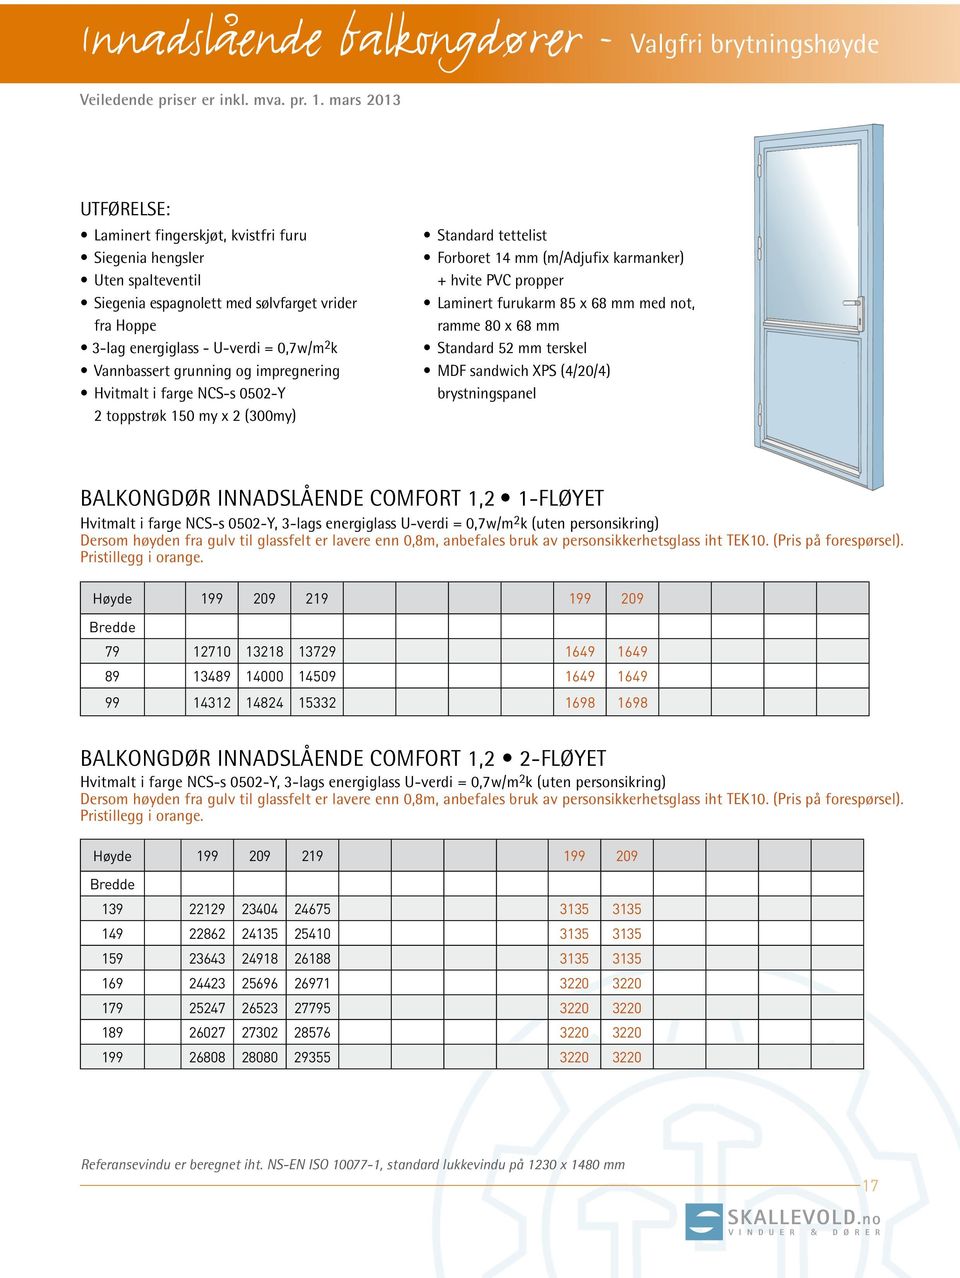 XPS (4/20/4) brystningspanel balkongdør innadslående COMFORT 1,2 1-fløyet Hvitmalt i farge NCS-s 0502-Y, 3-lags energiglass U-verdi = 0,7w/m 2 k (uten personsikring) Pristillegg i orange.